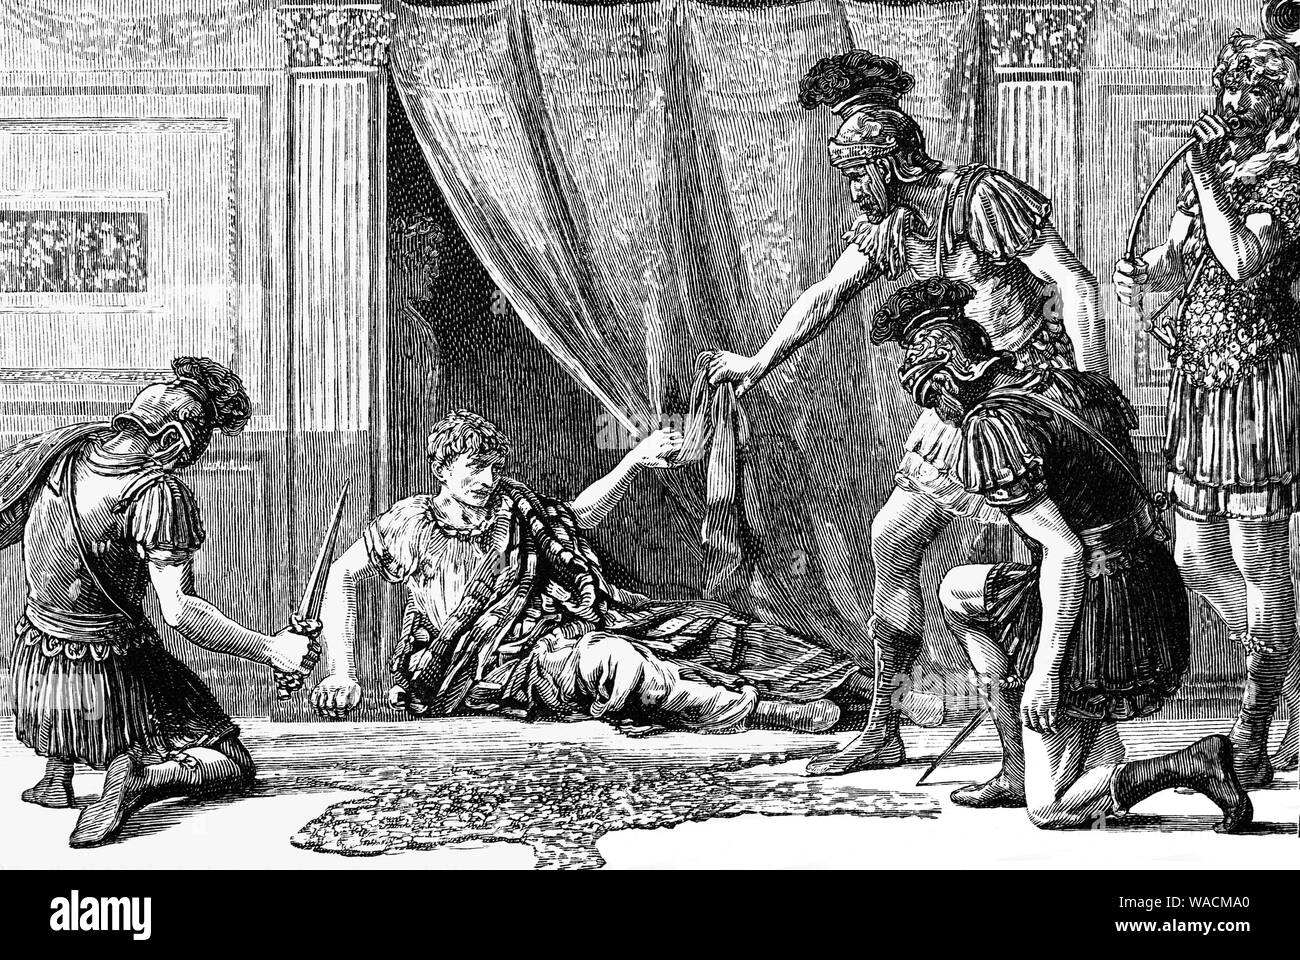 Claudius aka Tiberius Claudius Caesar Augustus Germanicus (10 BC - AD 54) fut empereur romain de 41 à 54 AD. Parce qu'il a été affligé avec une boiterie légère et la surdité en raison d'une maladie à un jeune âge, il a été exclu de la fonction publique. Dans 41AD, Caligula fut assassiné dans un complot impliquant le commandant prétorien Cassius Chaerea ainsi que plusieurs sénateurs. Après le meurtre, Claudius a été témoin de l'exécuter plusieurs gardes nobles, y compris ses amis et s'enfuit vers le palais de cacher où un prétorien nommé Gratus a trouvé derrière un rideau et le déclare imperator. Banque D'Images